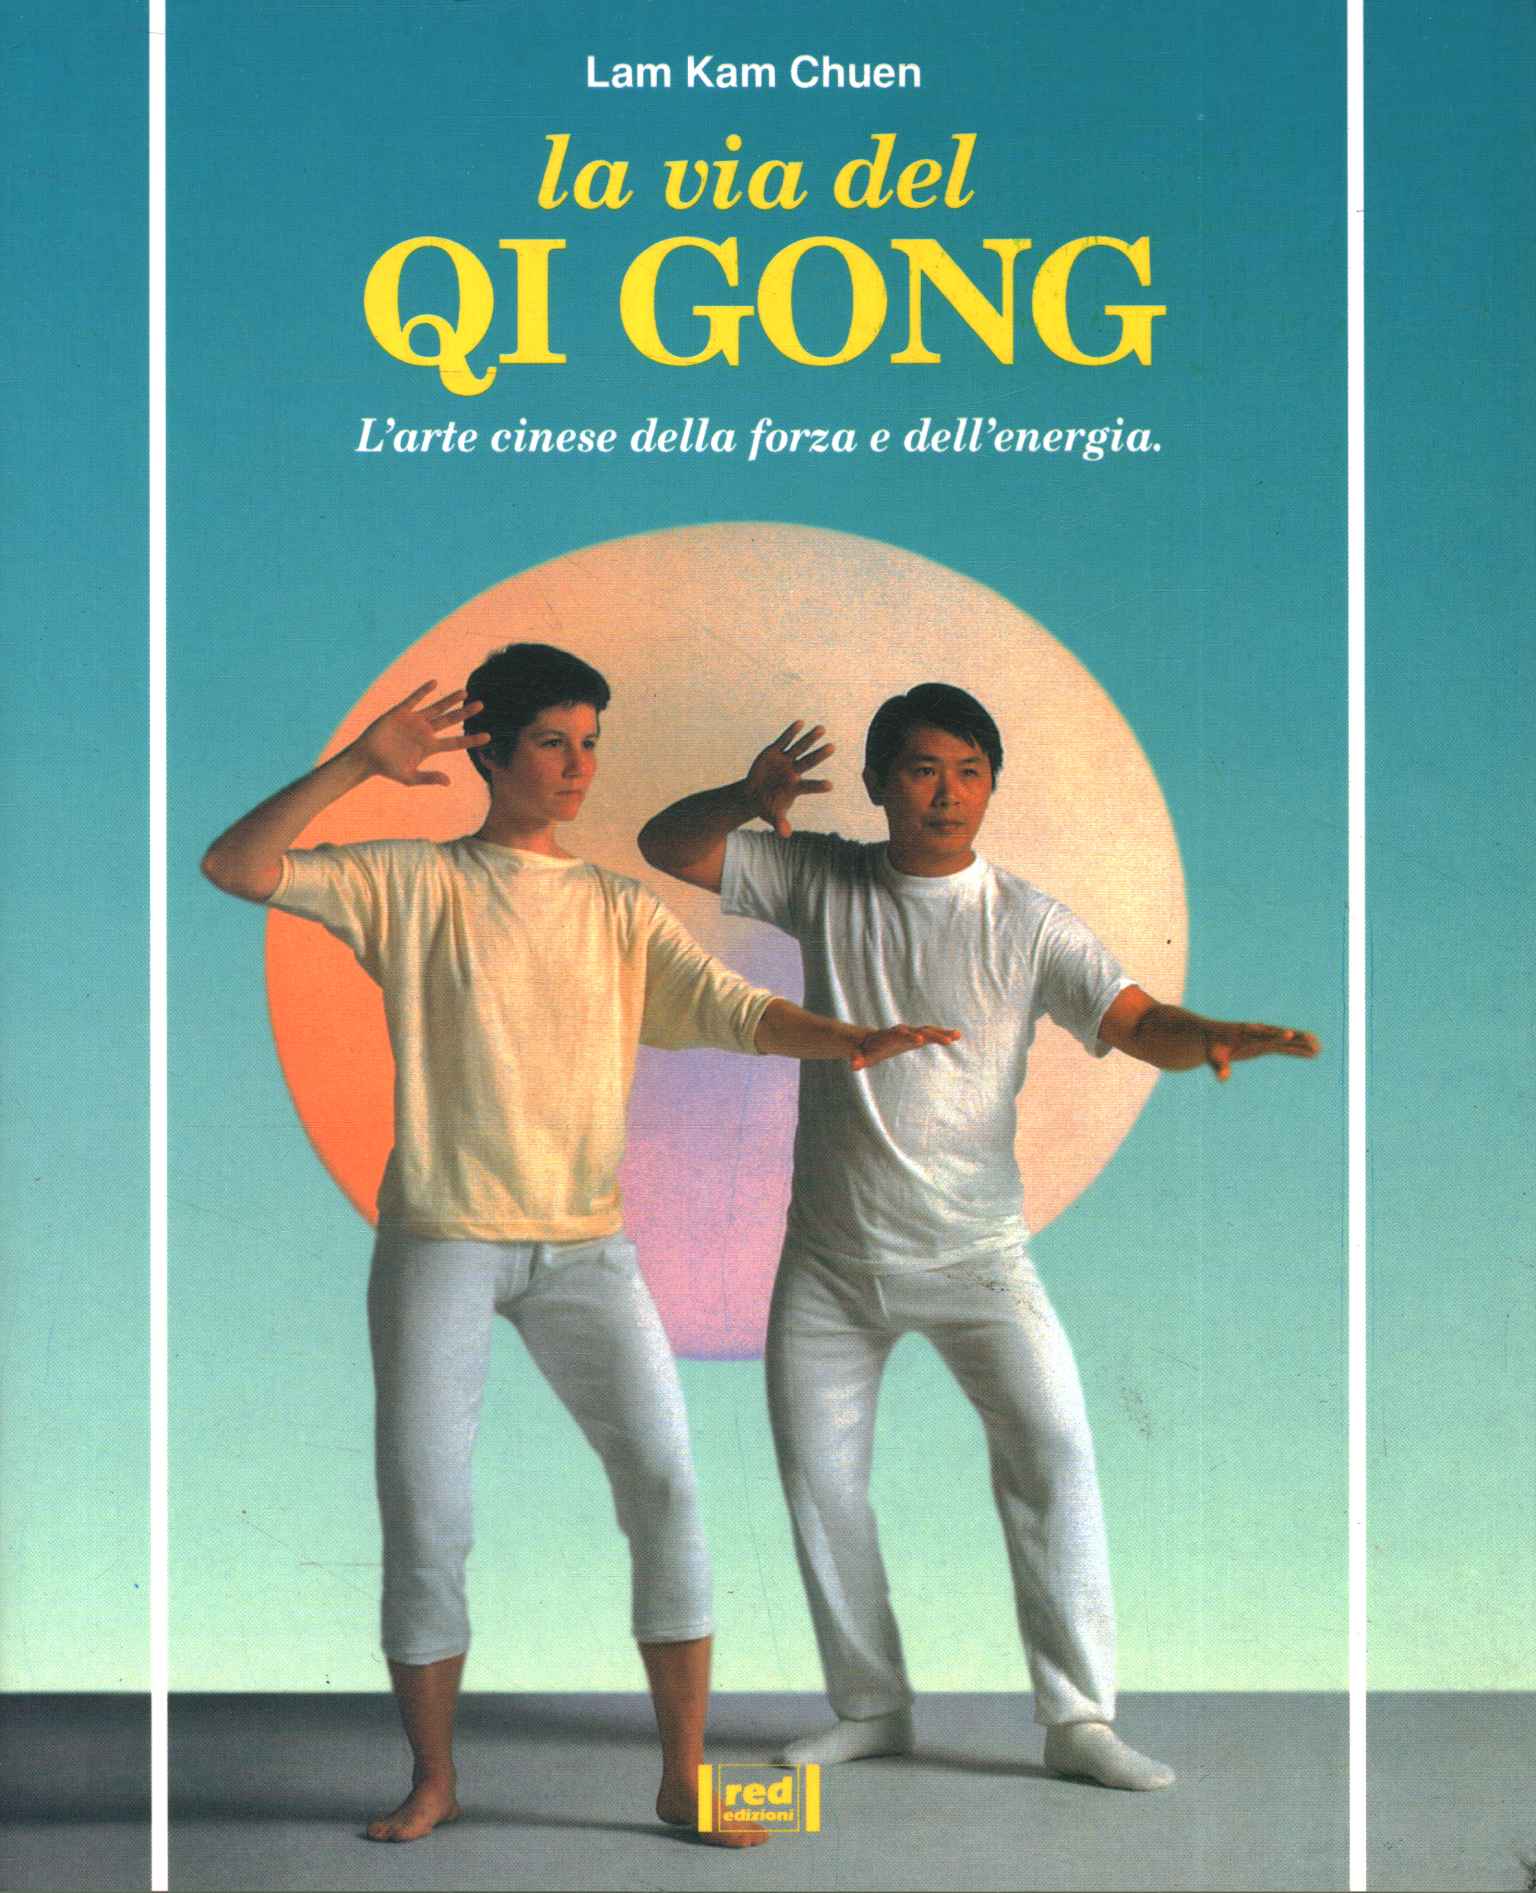 El camino del Qi Gong